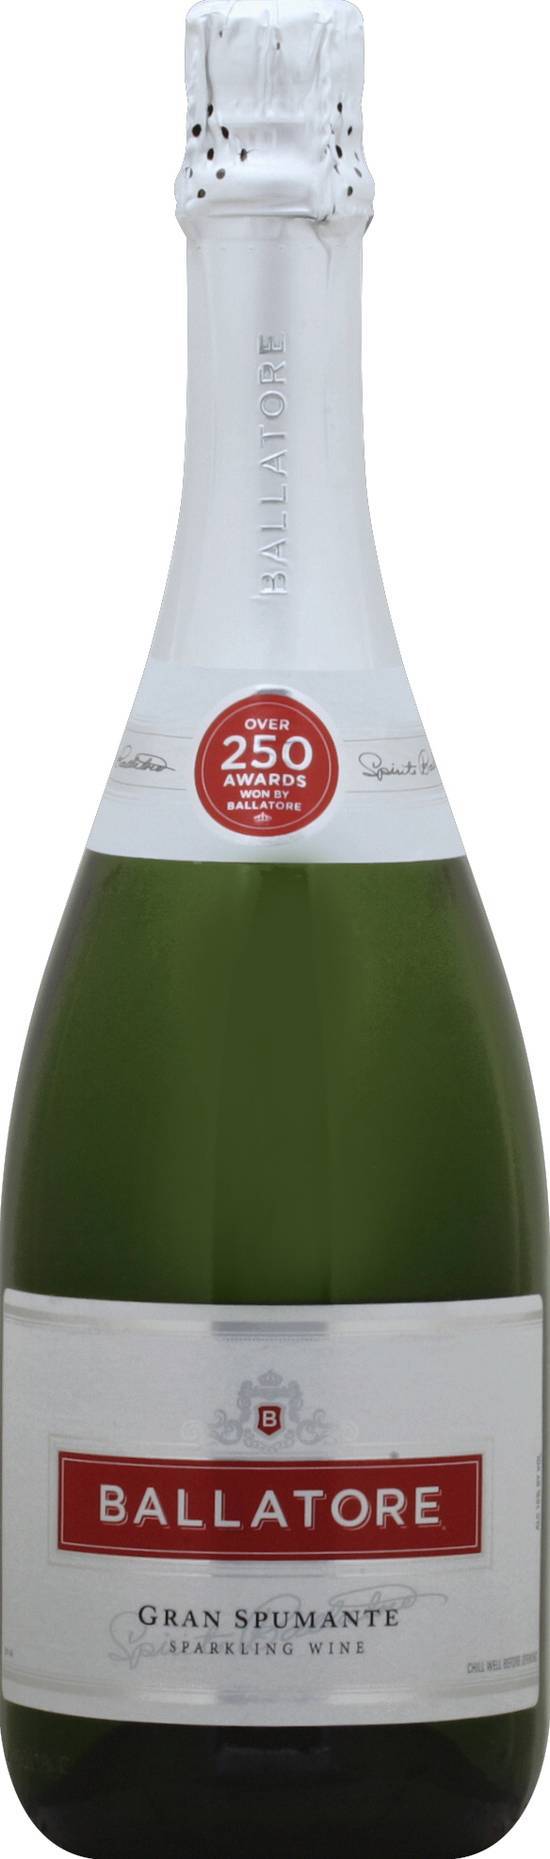 Ballatore Gran Spumante Sparkling Wine (750 ml)